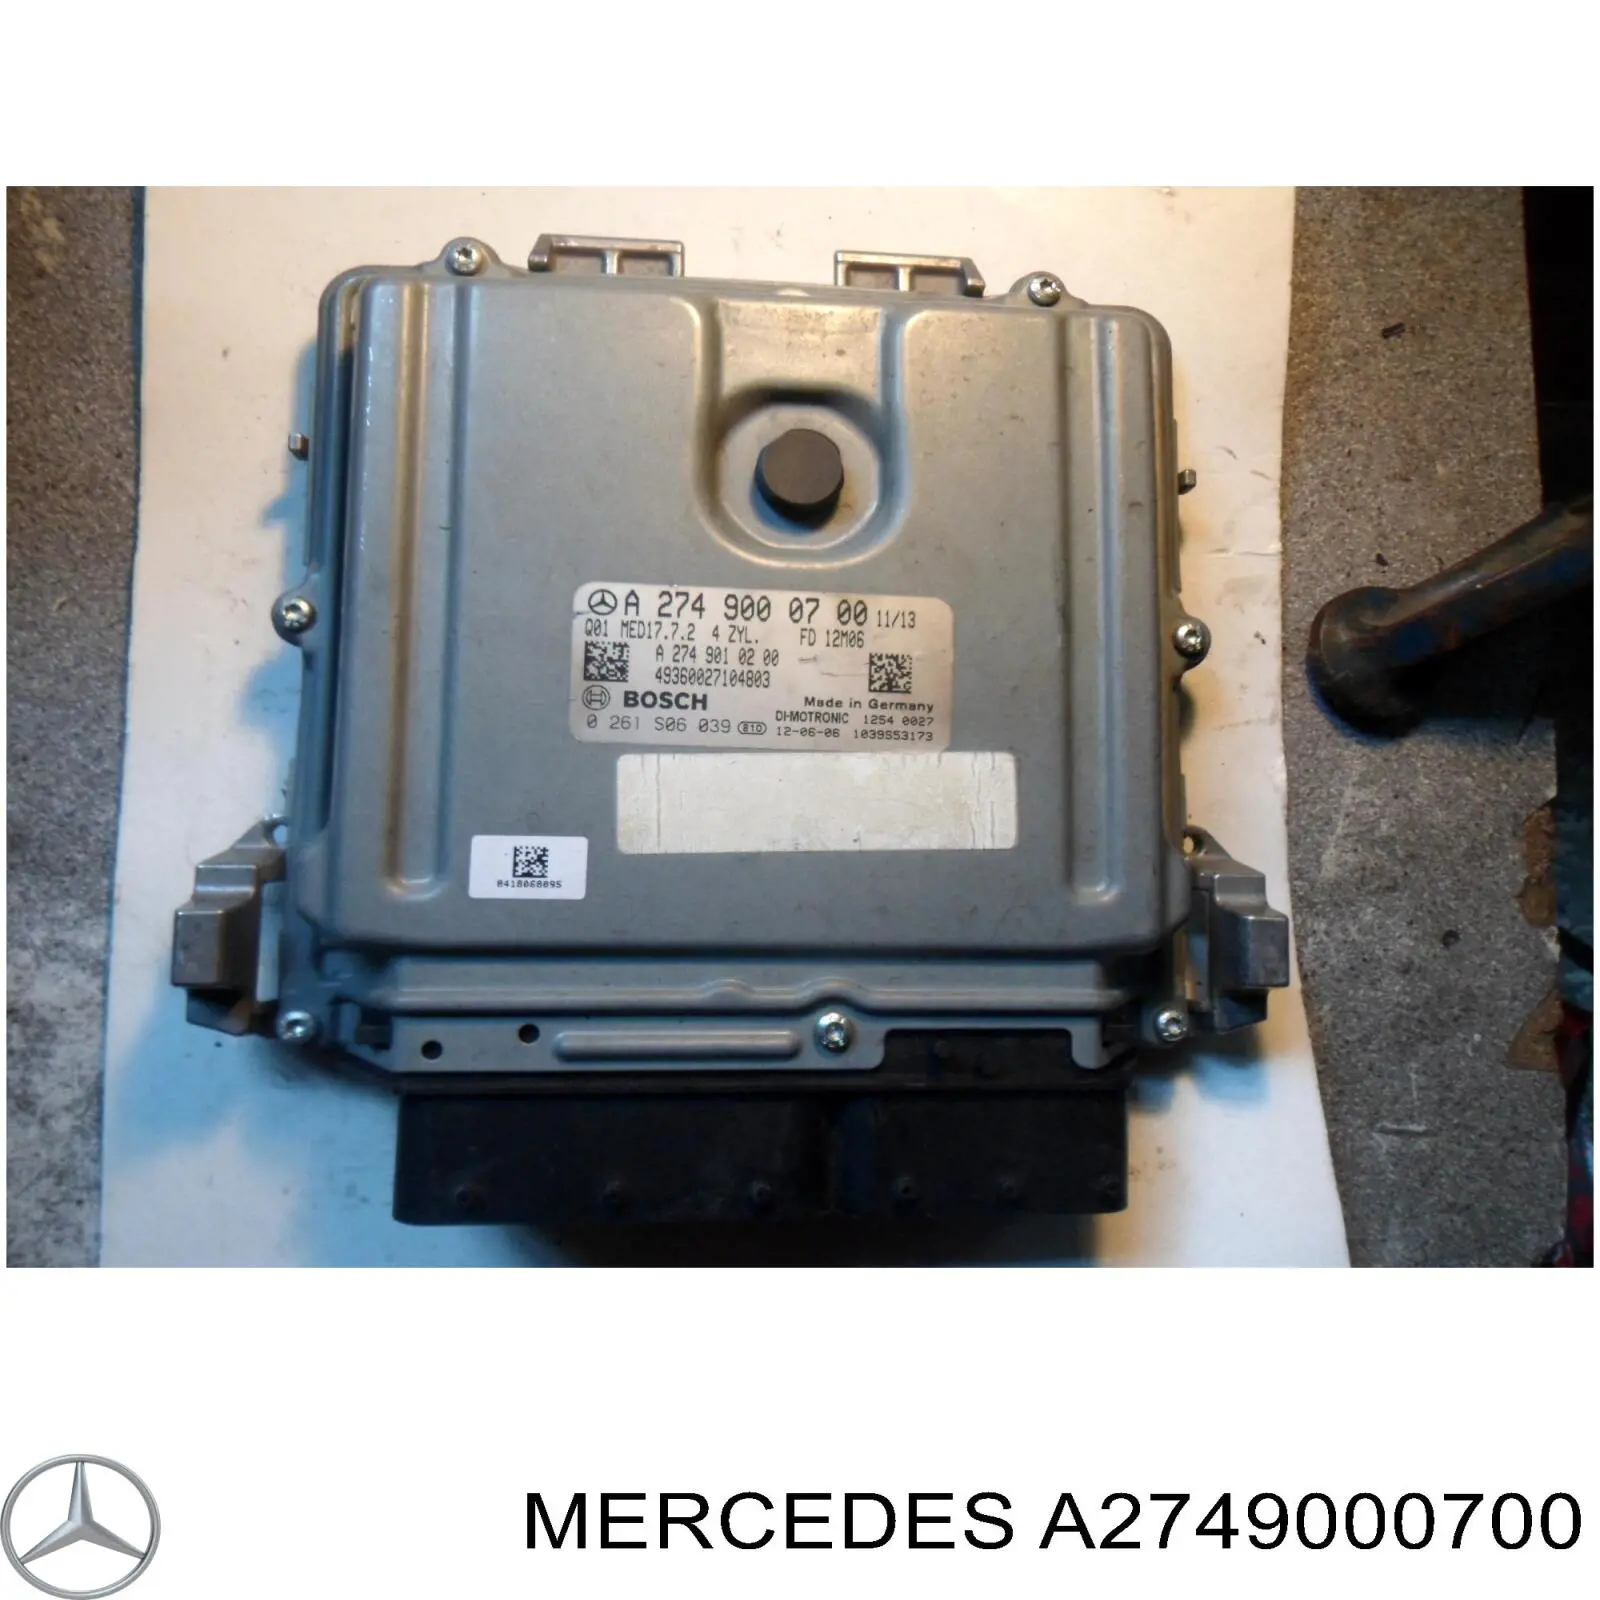 A2749000700 Mercedes módulo de control del motor (ecu)